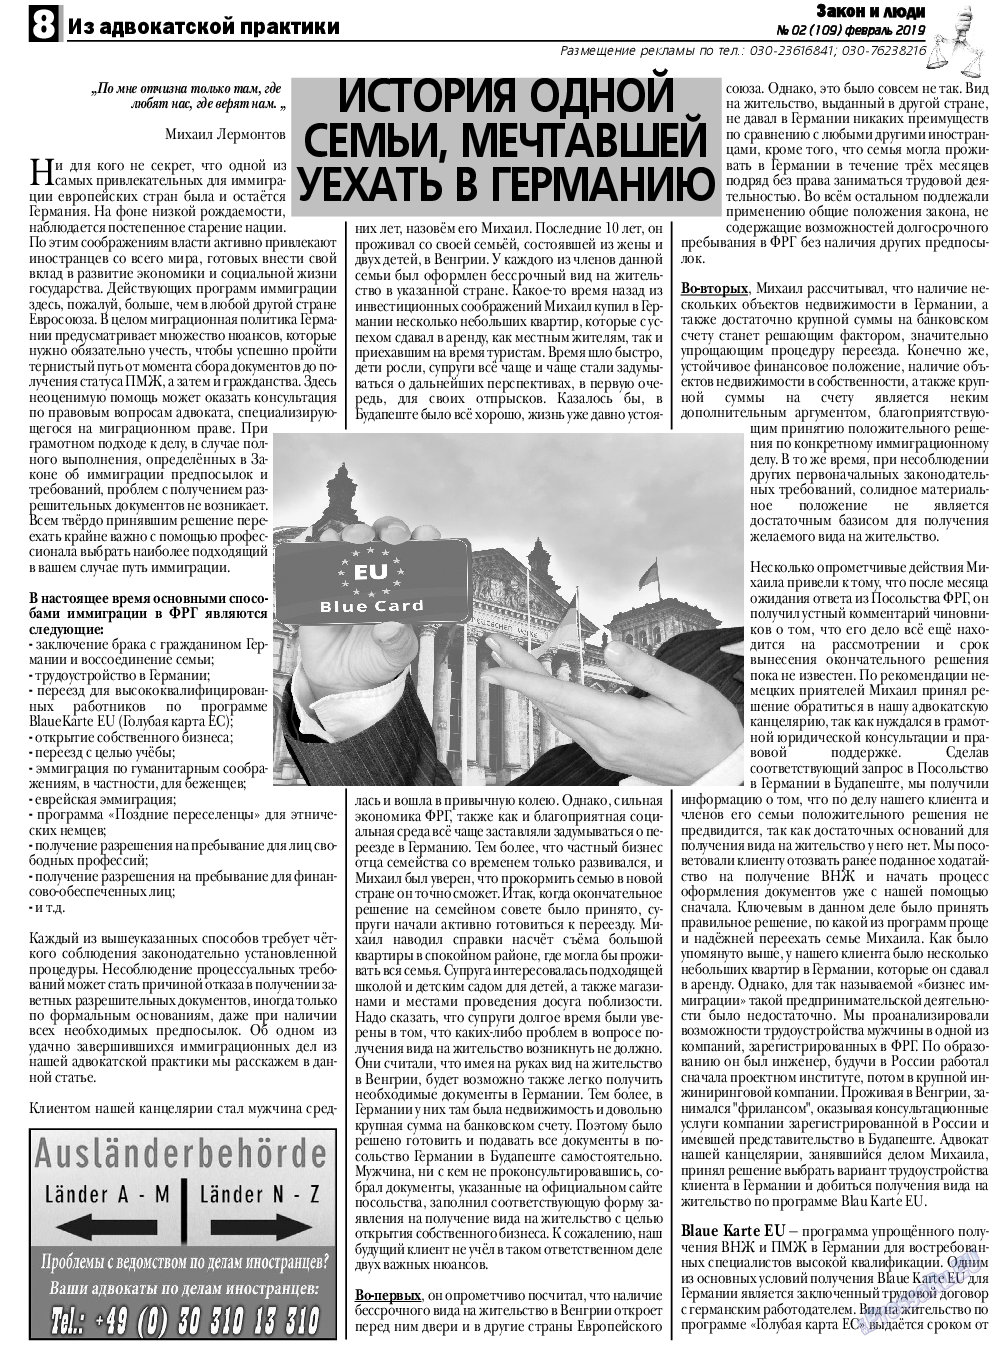 Закон и люди, газета. 2019 №2 стр.8